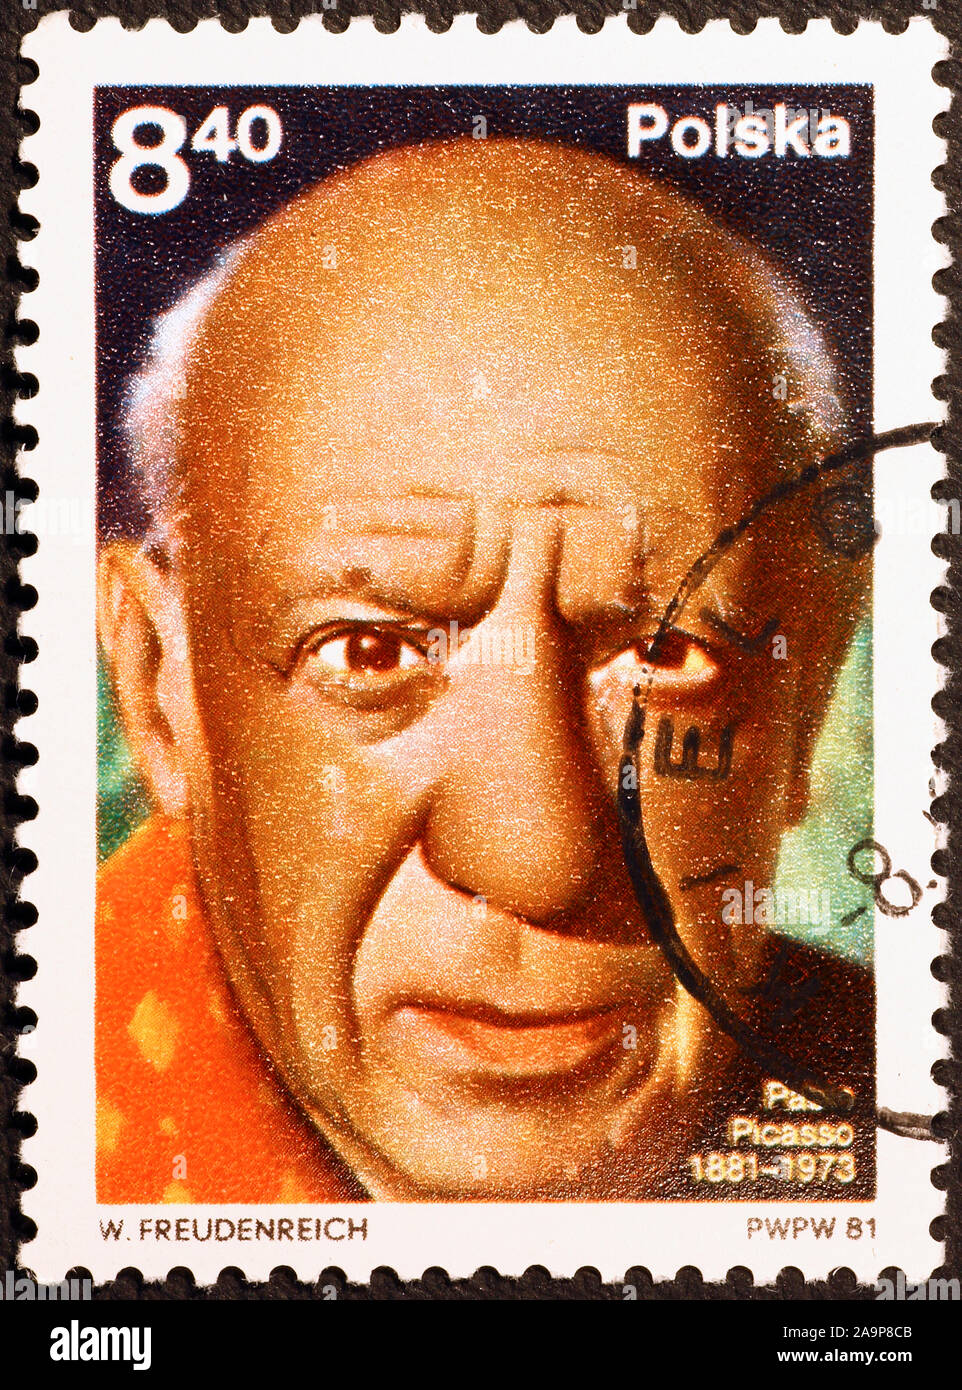 Portrait de Pablo Picasso sur timbre polonais Banque D'Images